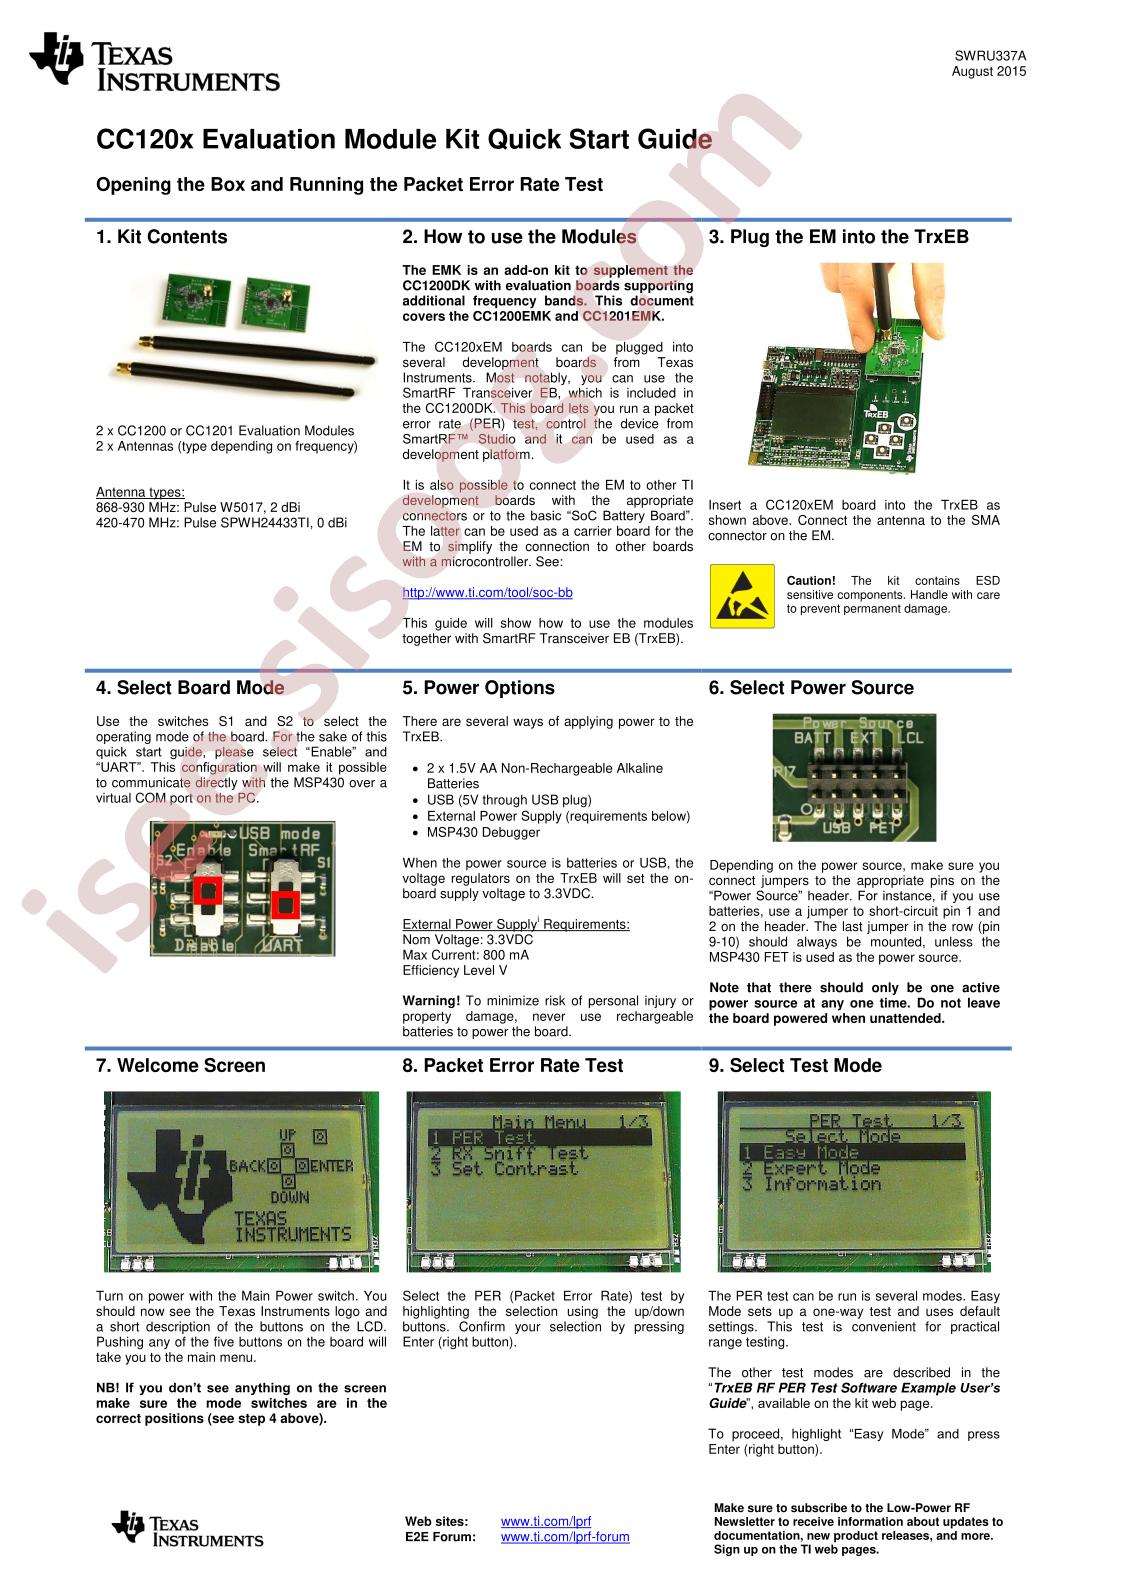 CC1200 User Guide Kit QSG